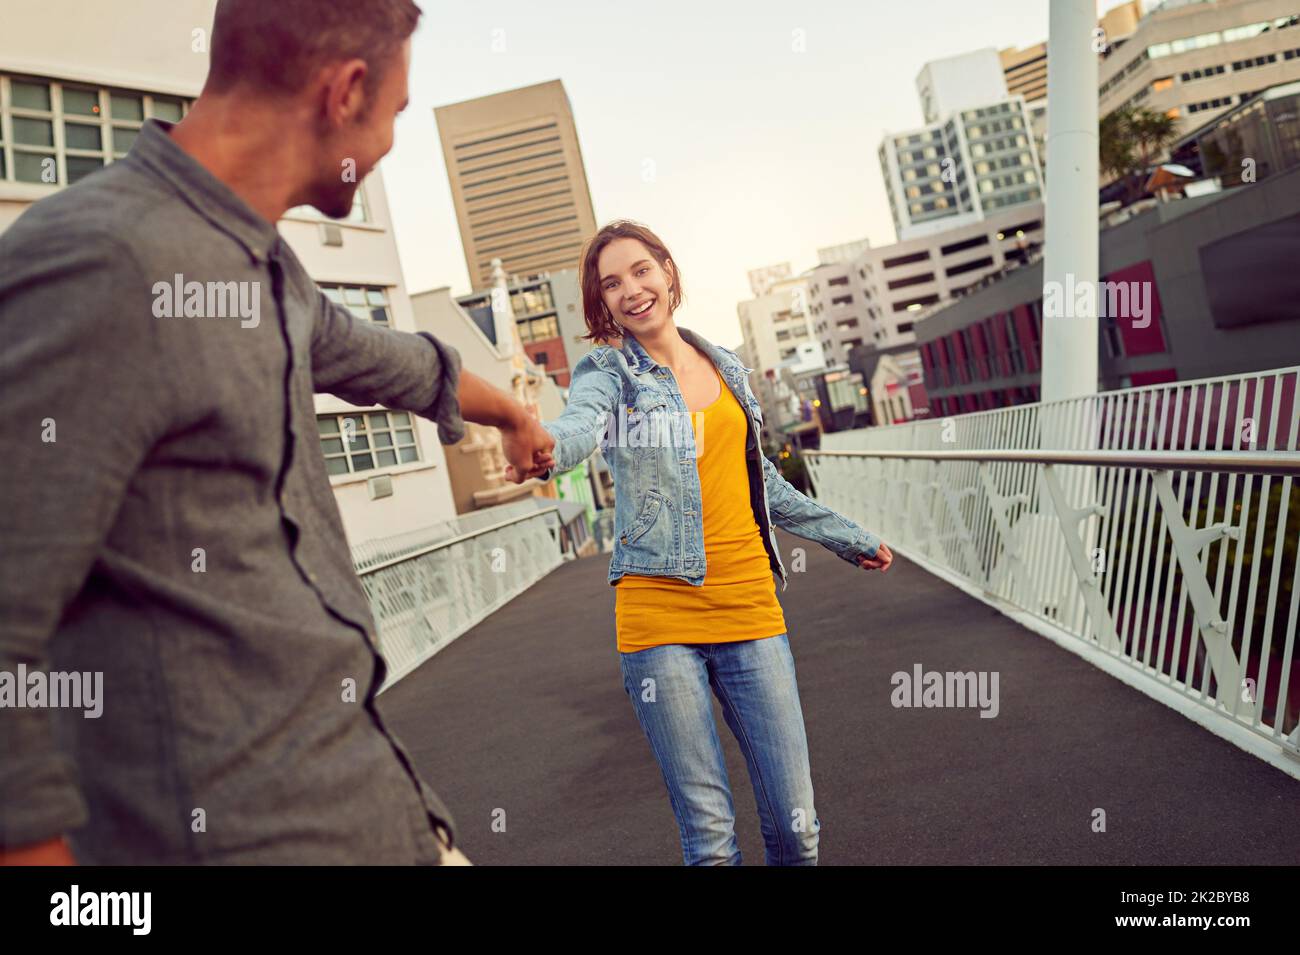 Promenades romantiques dans la ville. Photo d'un jeune couple heureux profitant d'une promenade romantique ensemble dans la ville. Banque D'Images